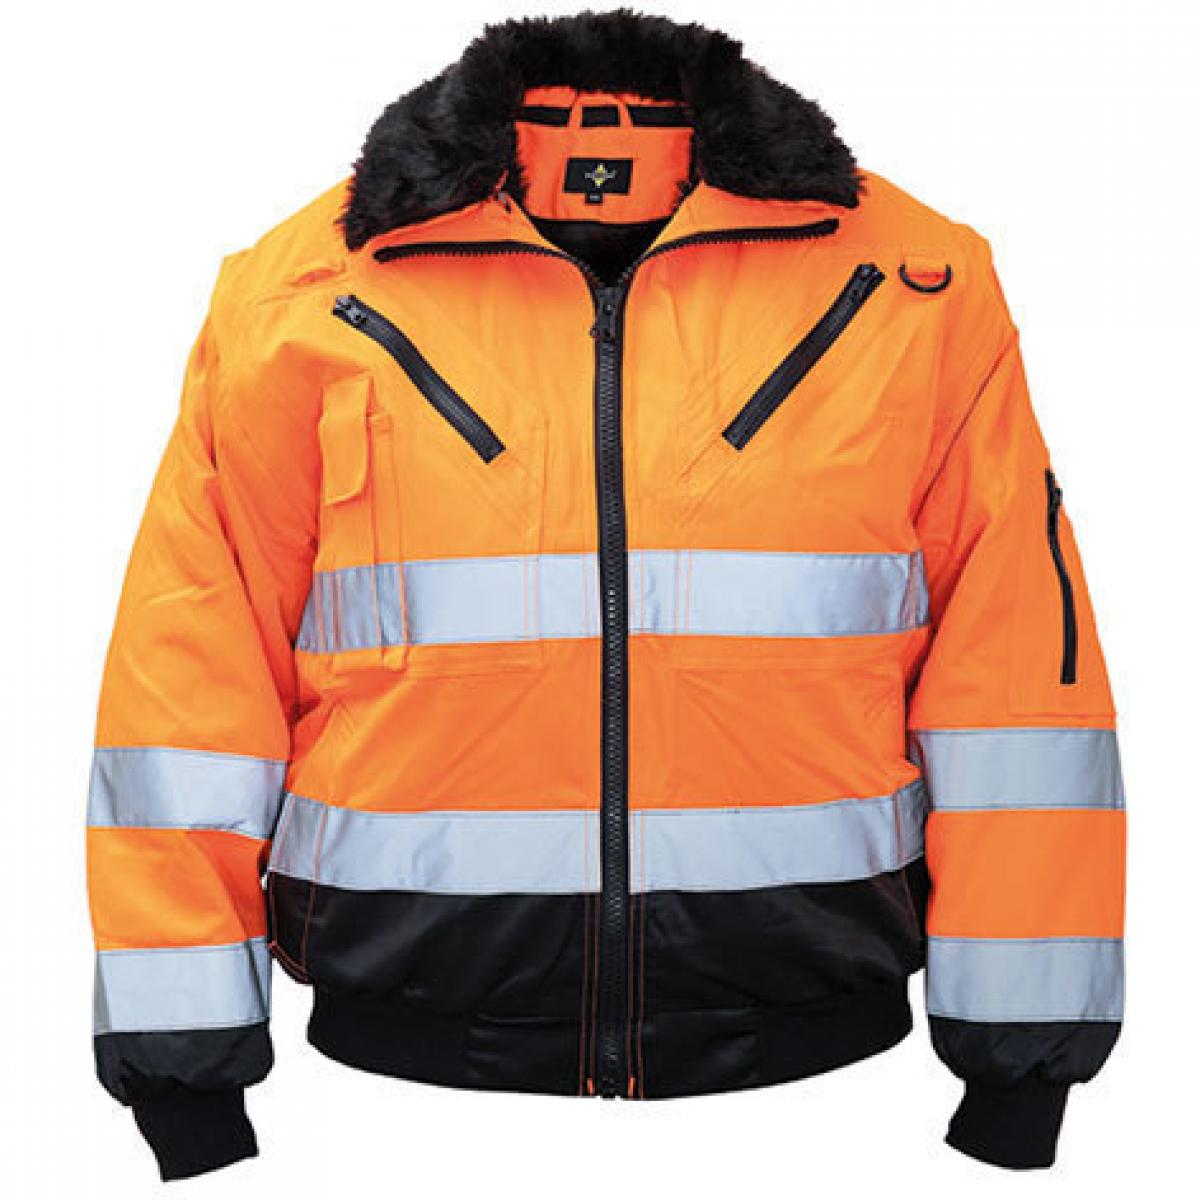 Hersteller: Korntex Herstellernummer: KXPJ Artikelbezeichnung: Pilot Jacket, Vier-in-eins Pilotenjacke Farbe: Signal Orange